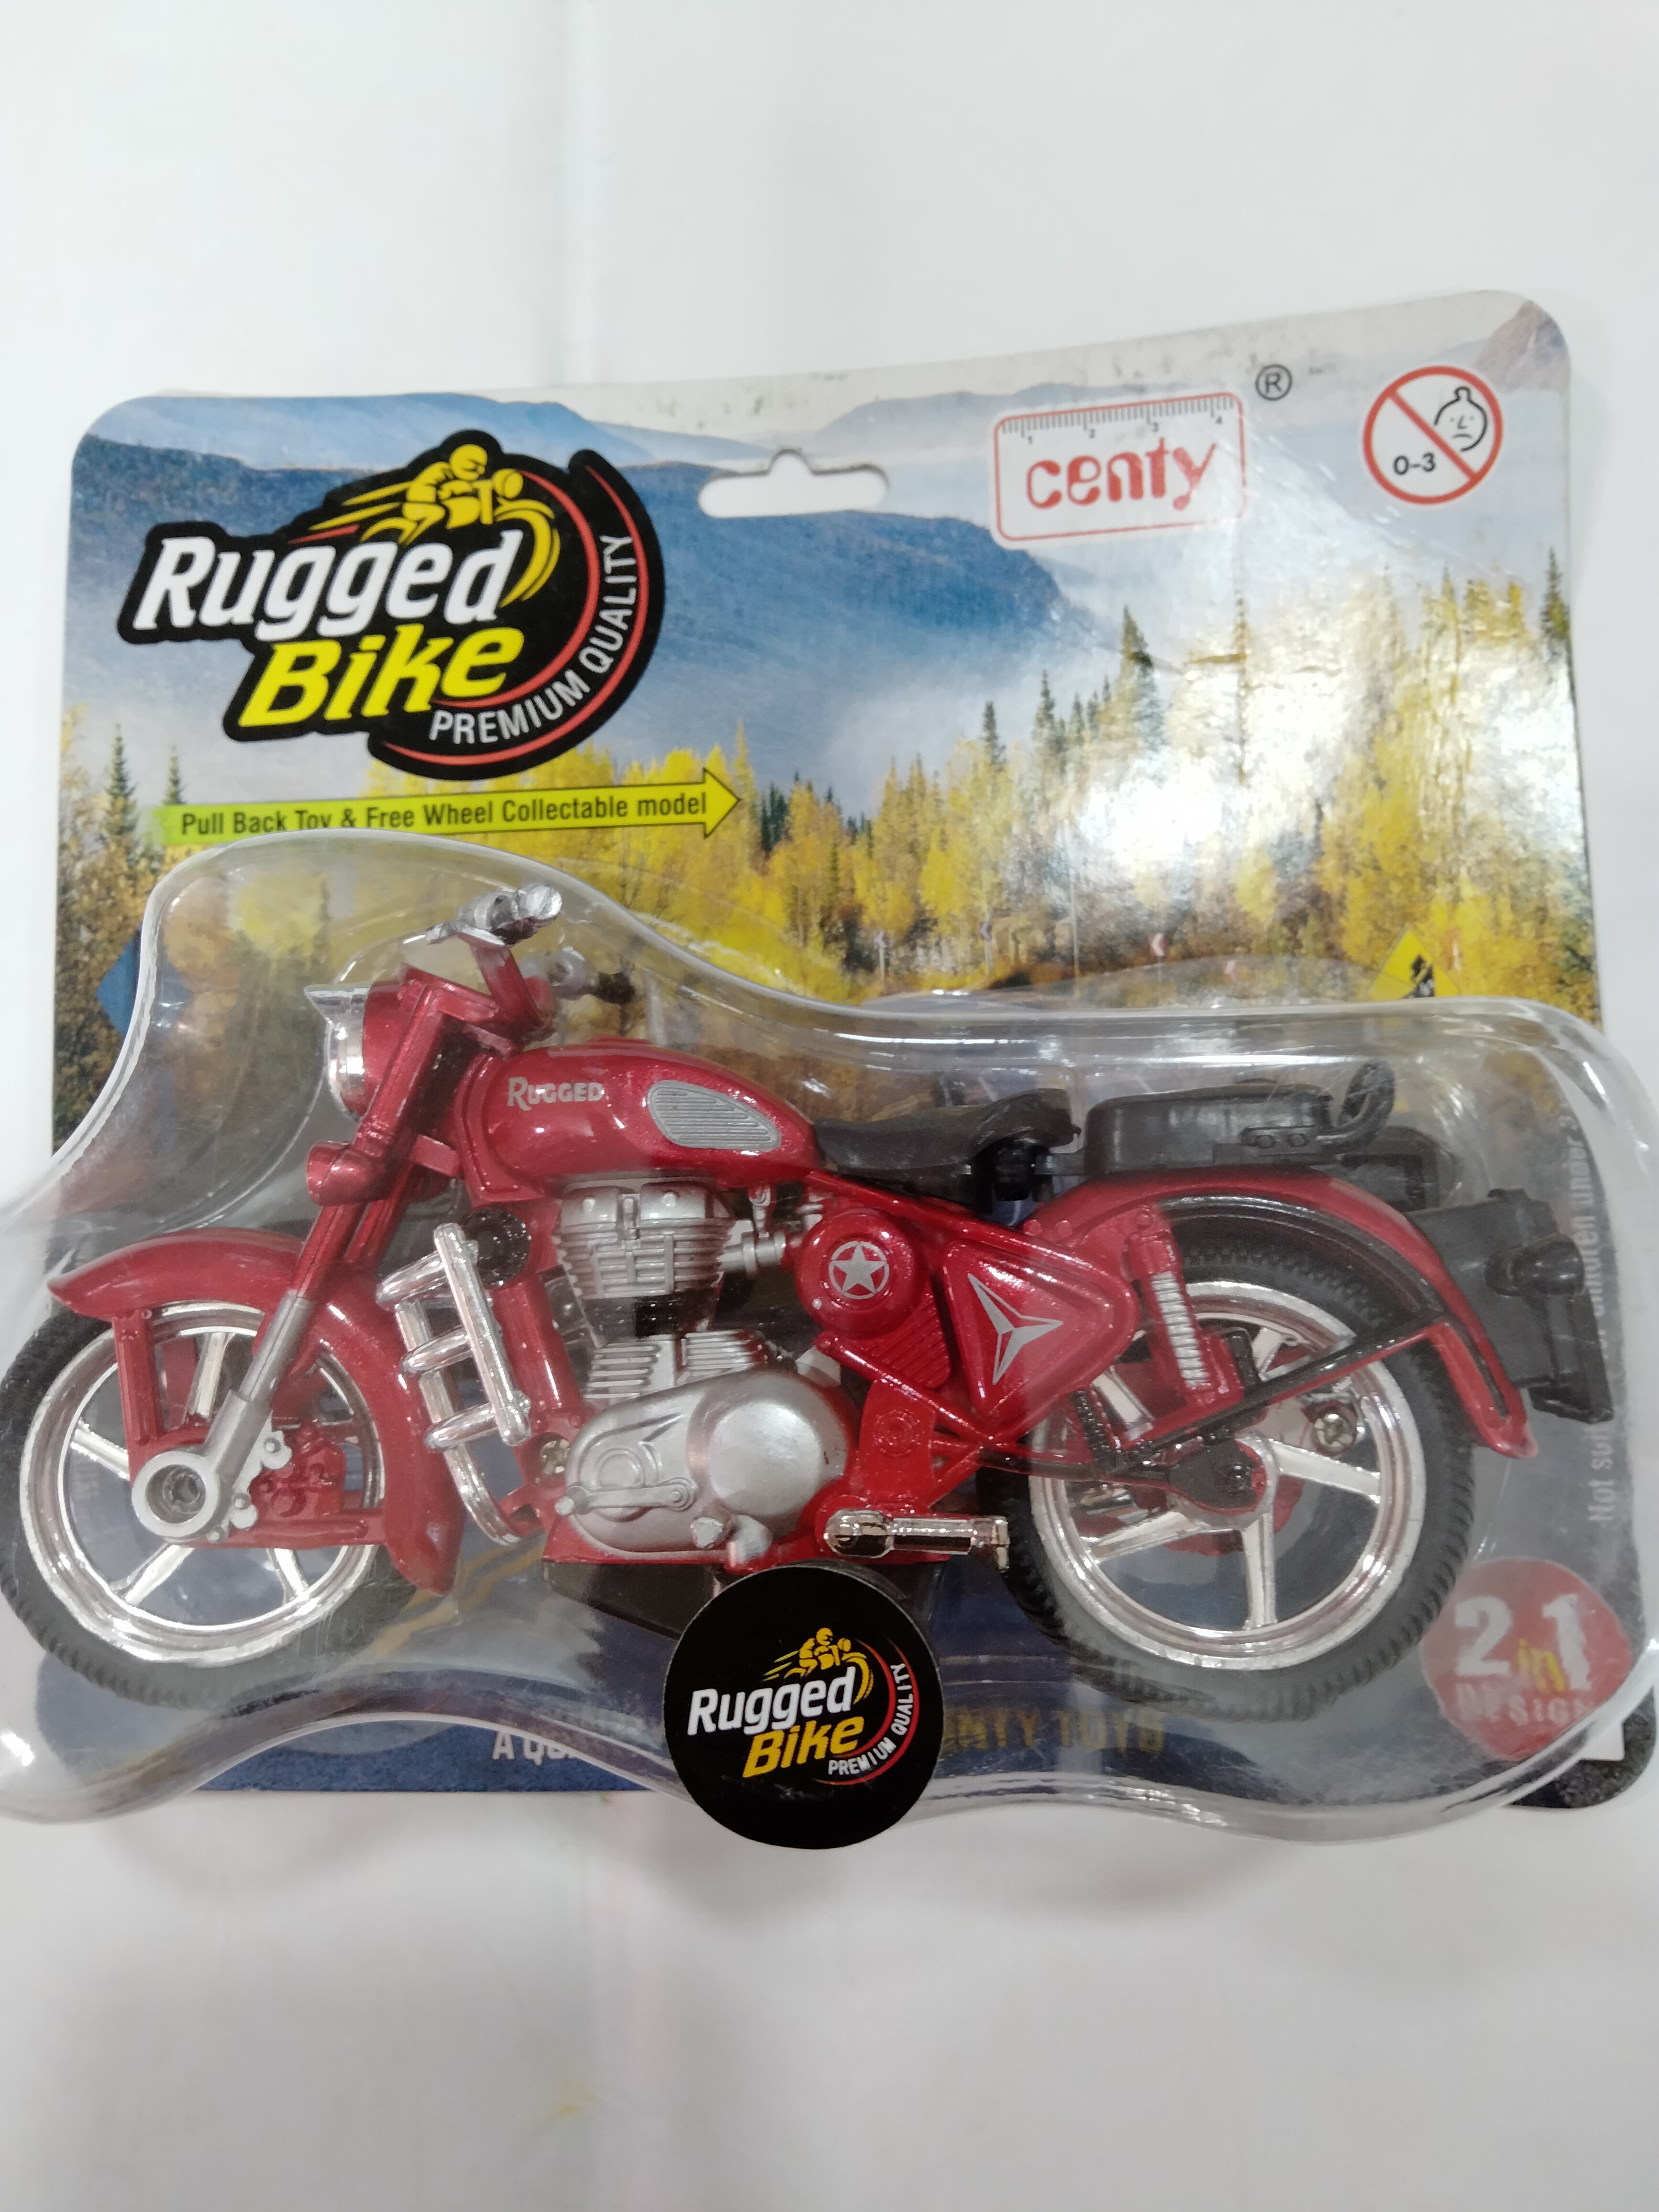 Rugged bike